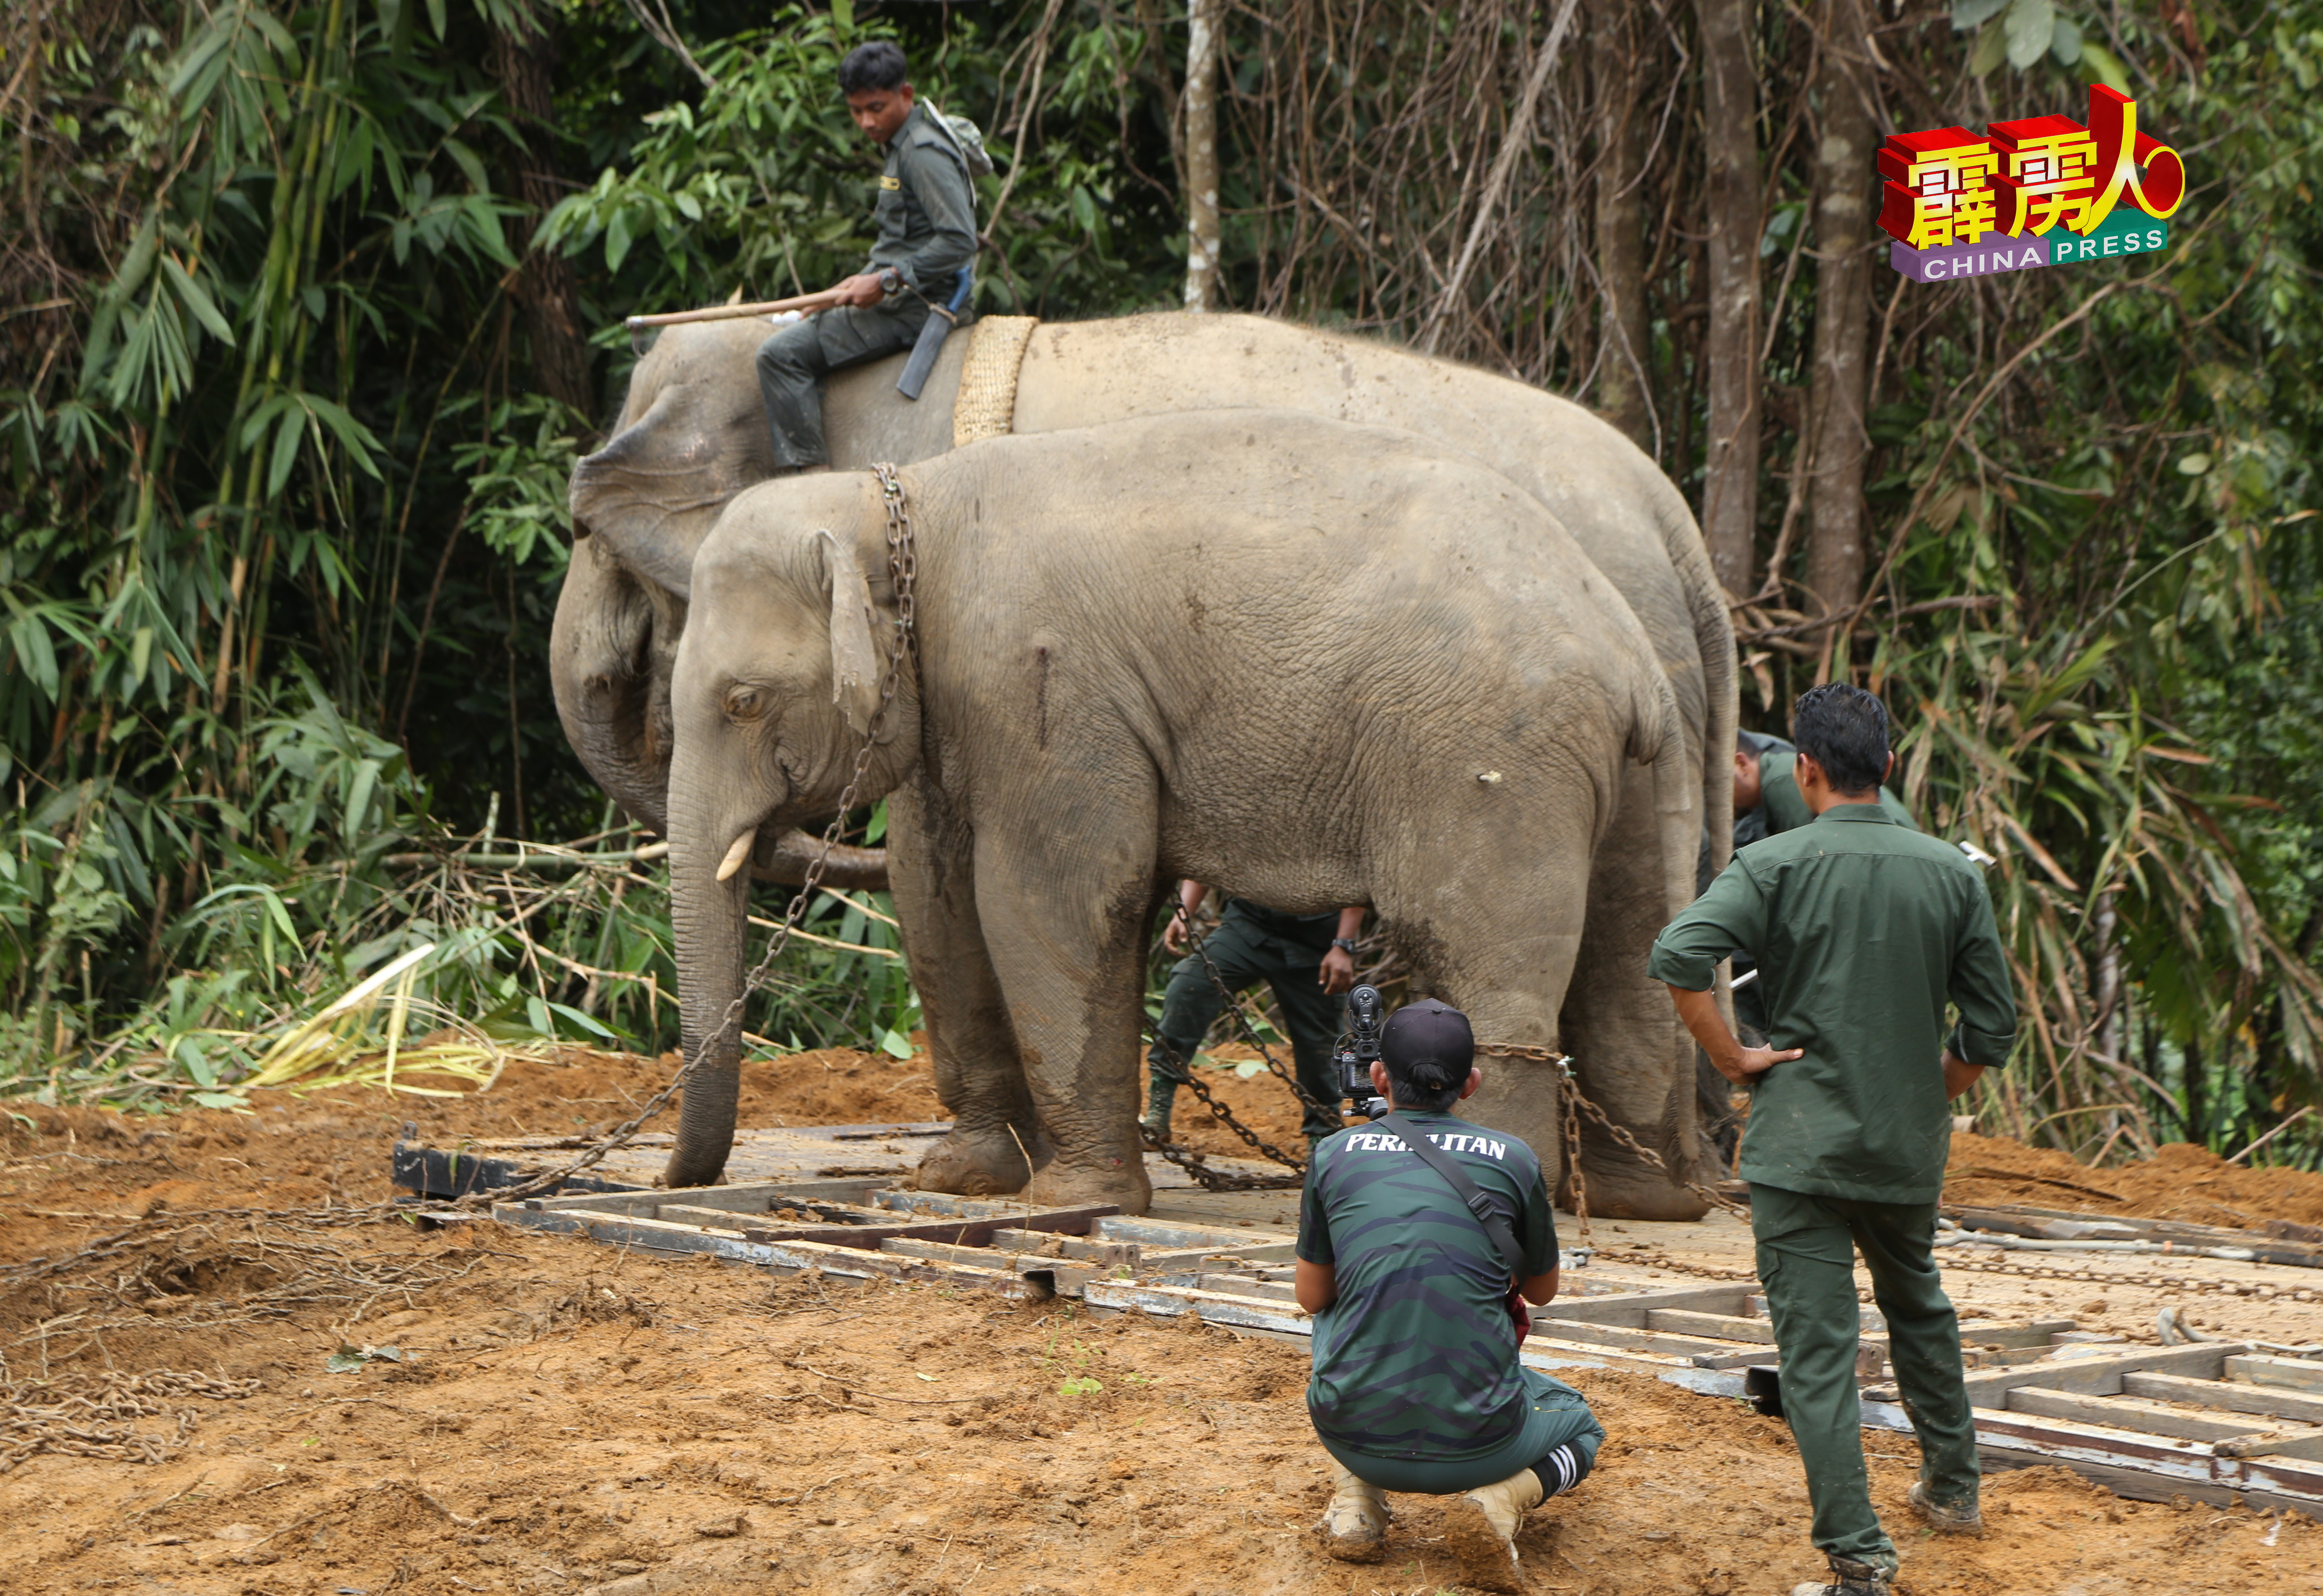 被捕的野象身上中了麻醉剂，身体疲软，依偎在在其中一隻驯象庞大的身躯。